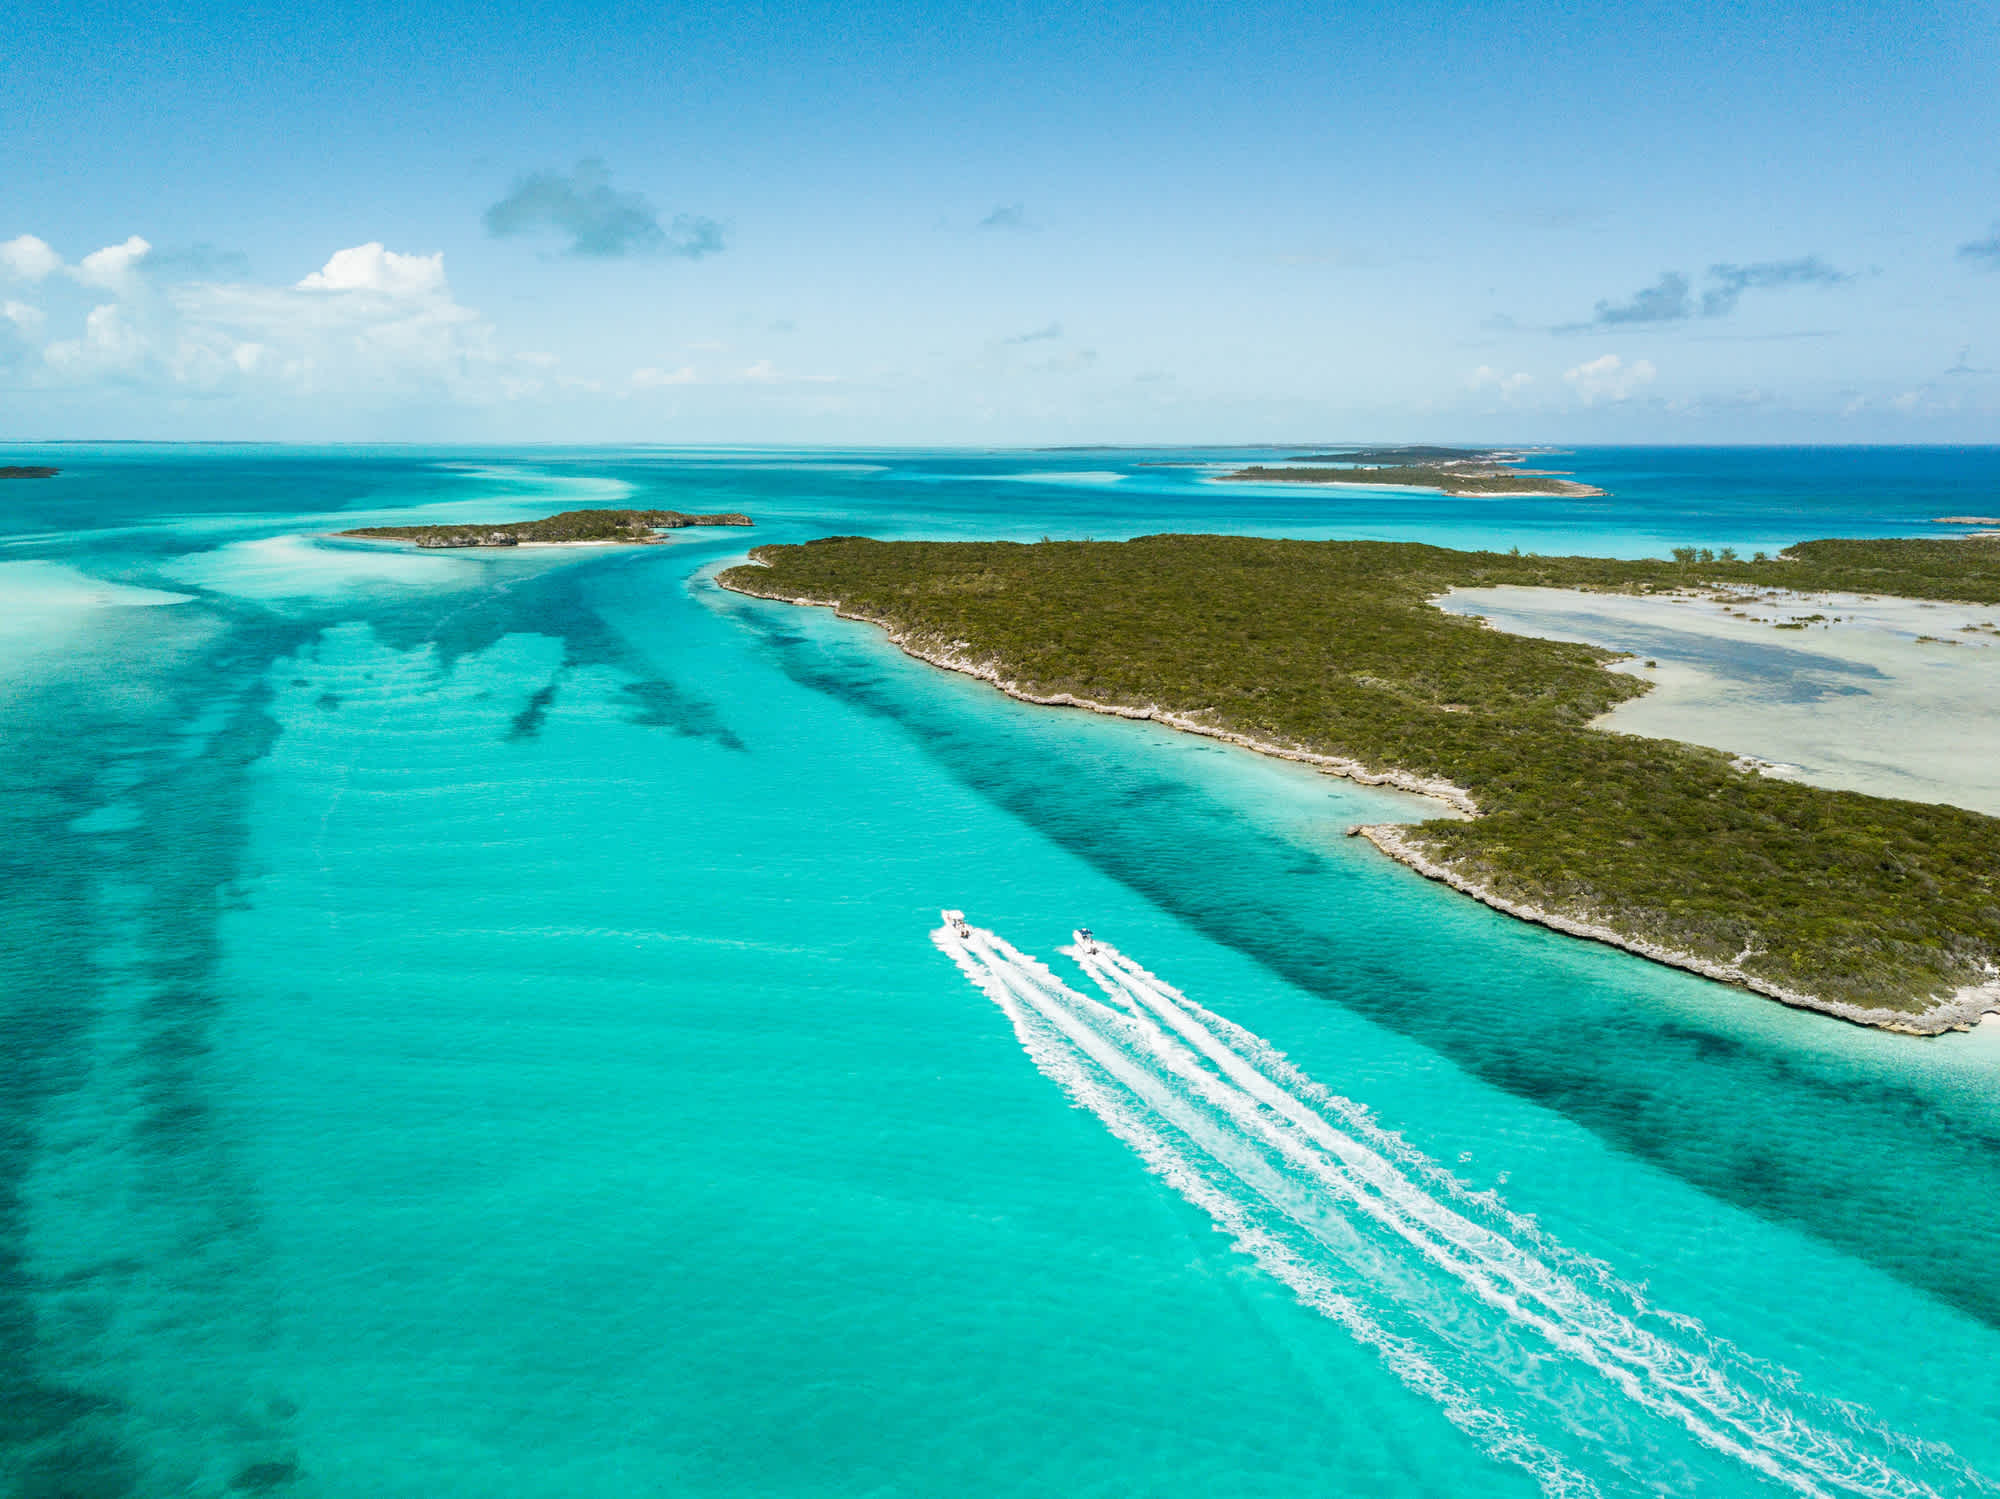 Découvrez des plages paradisiaques pendant votre voyage aux Caraïbes comme la baie d'Exuma aux Bahamas.